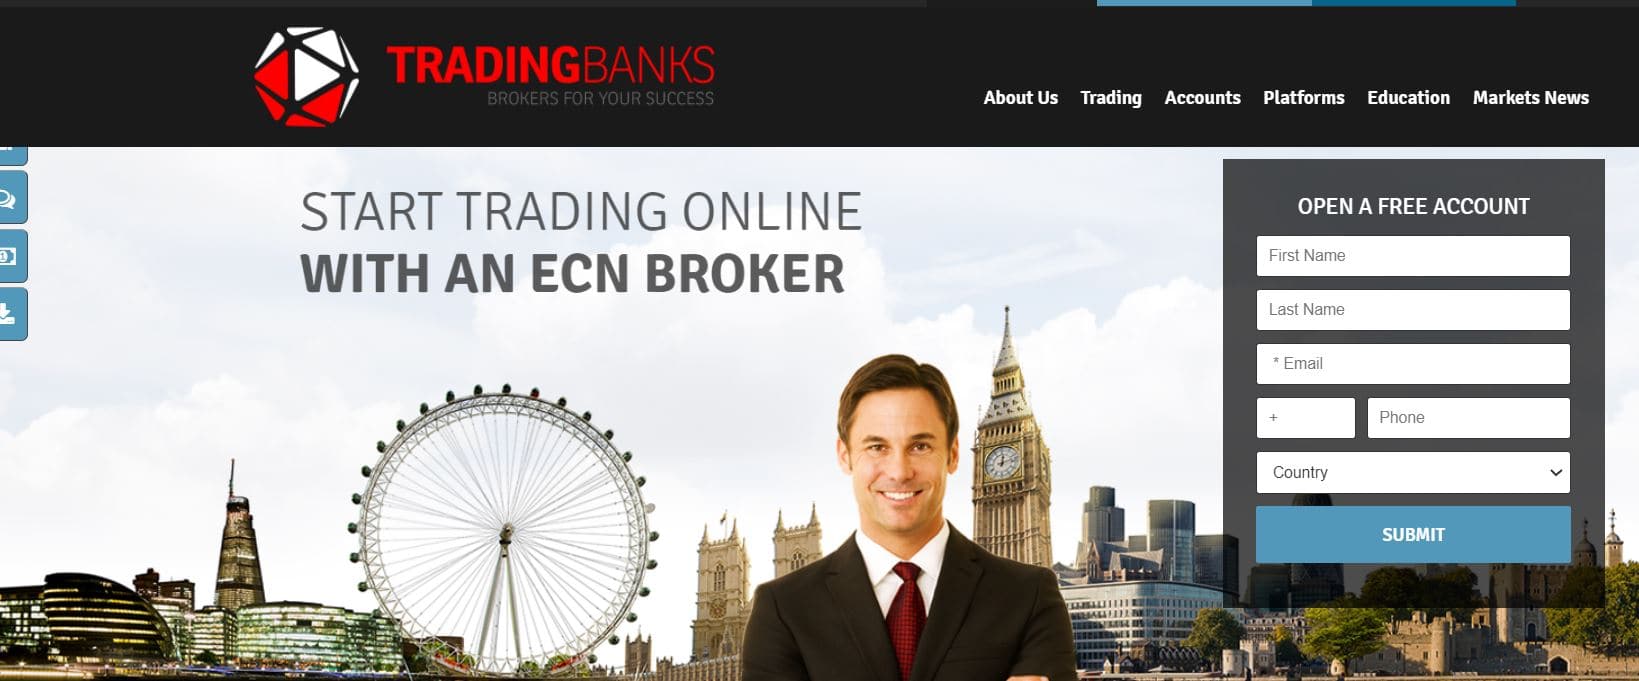 צילום מסך של אתר Tradingbanks.com ממרץ 2016